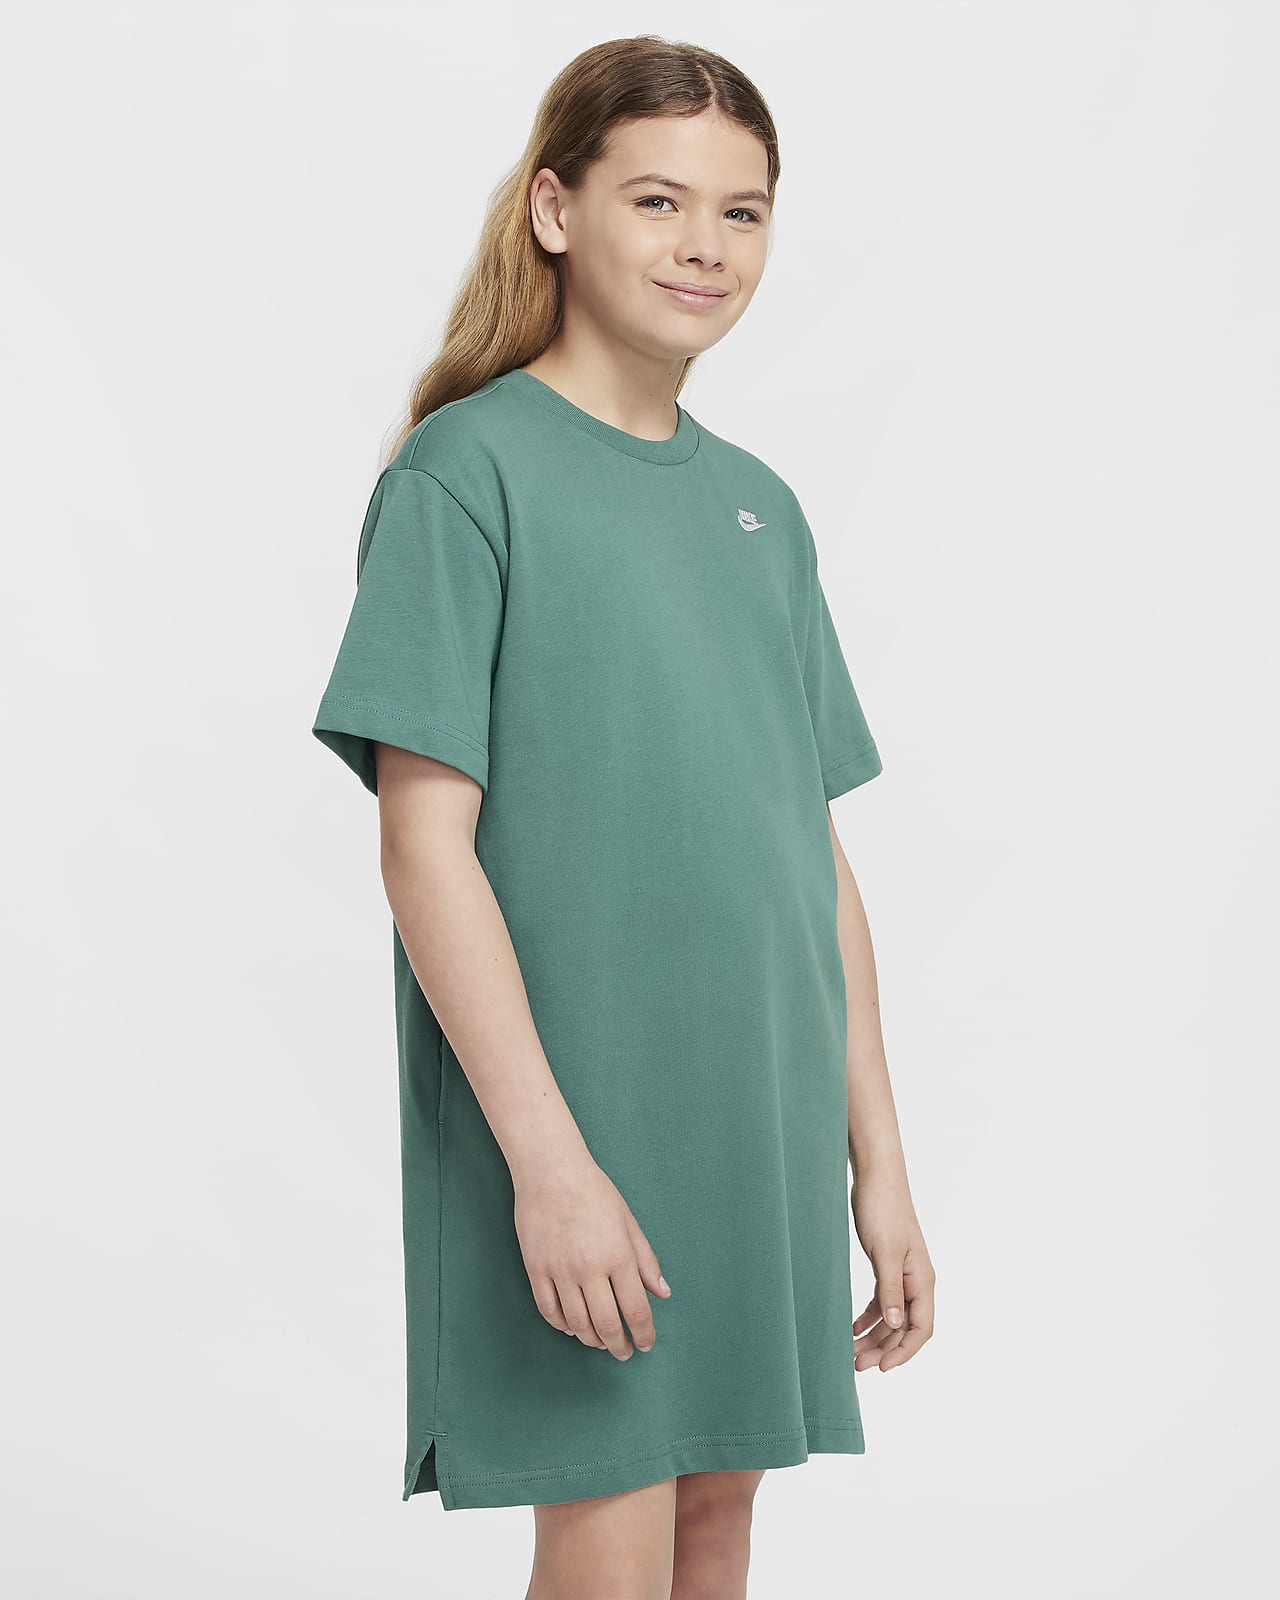 T-shirtklänning Nike Sportswear för ungdom (tjejer)